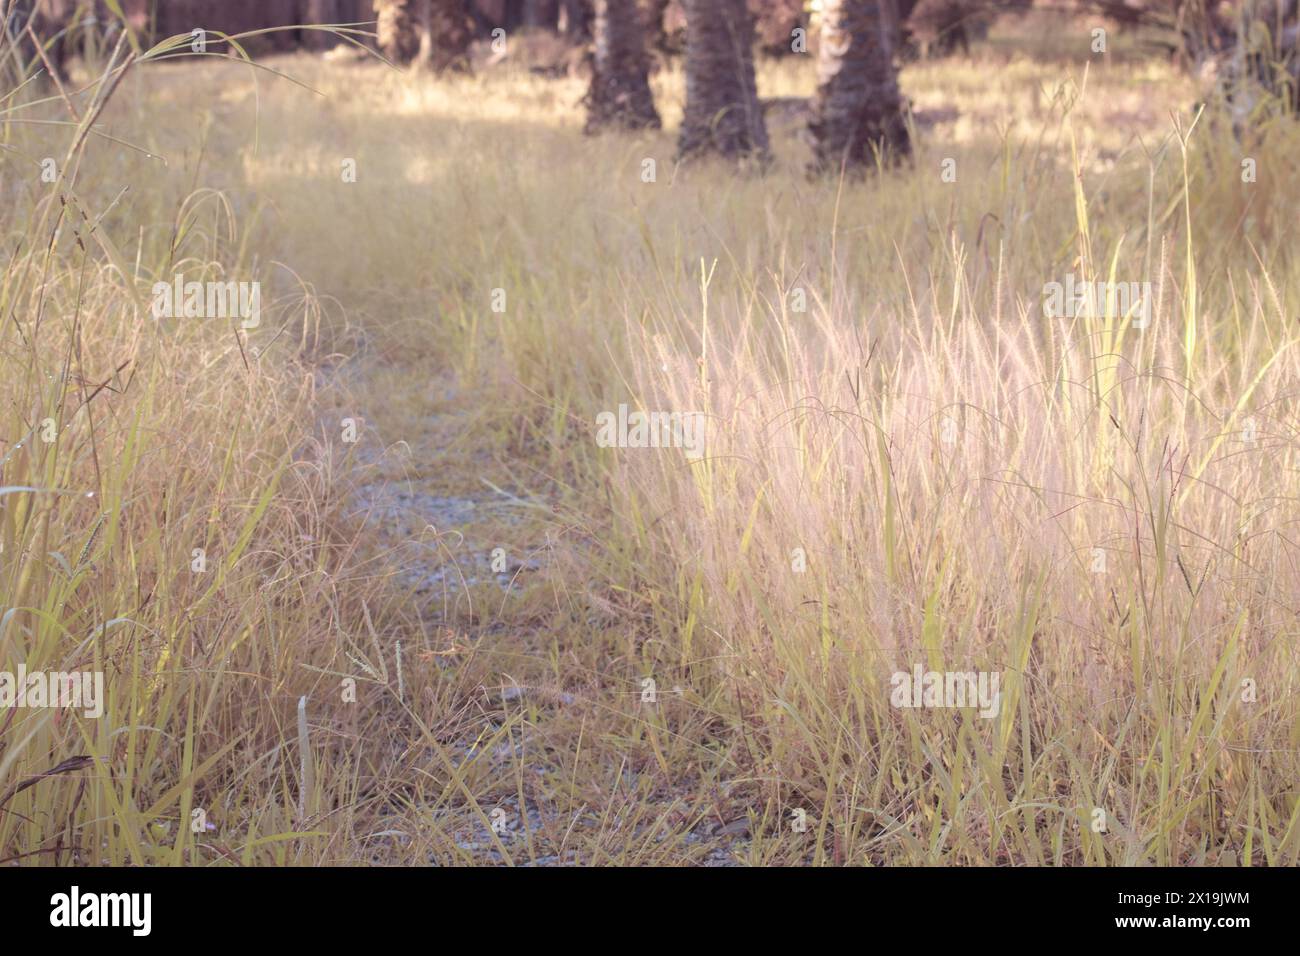 image infrarouge de l'herbe fontaine rose touffue dans la prairie sauvage. Banque D'Images